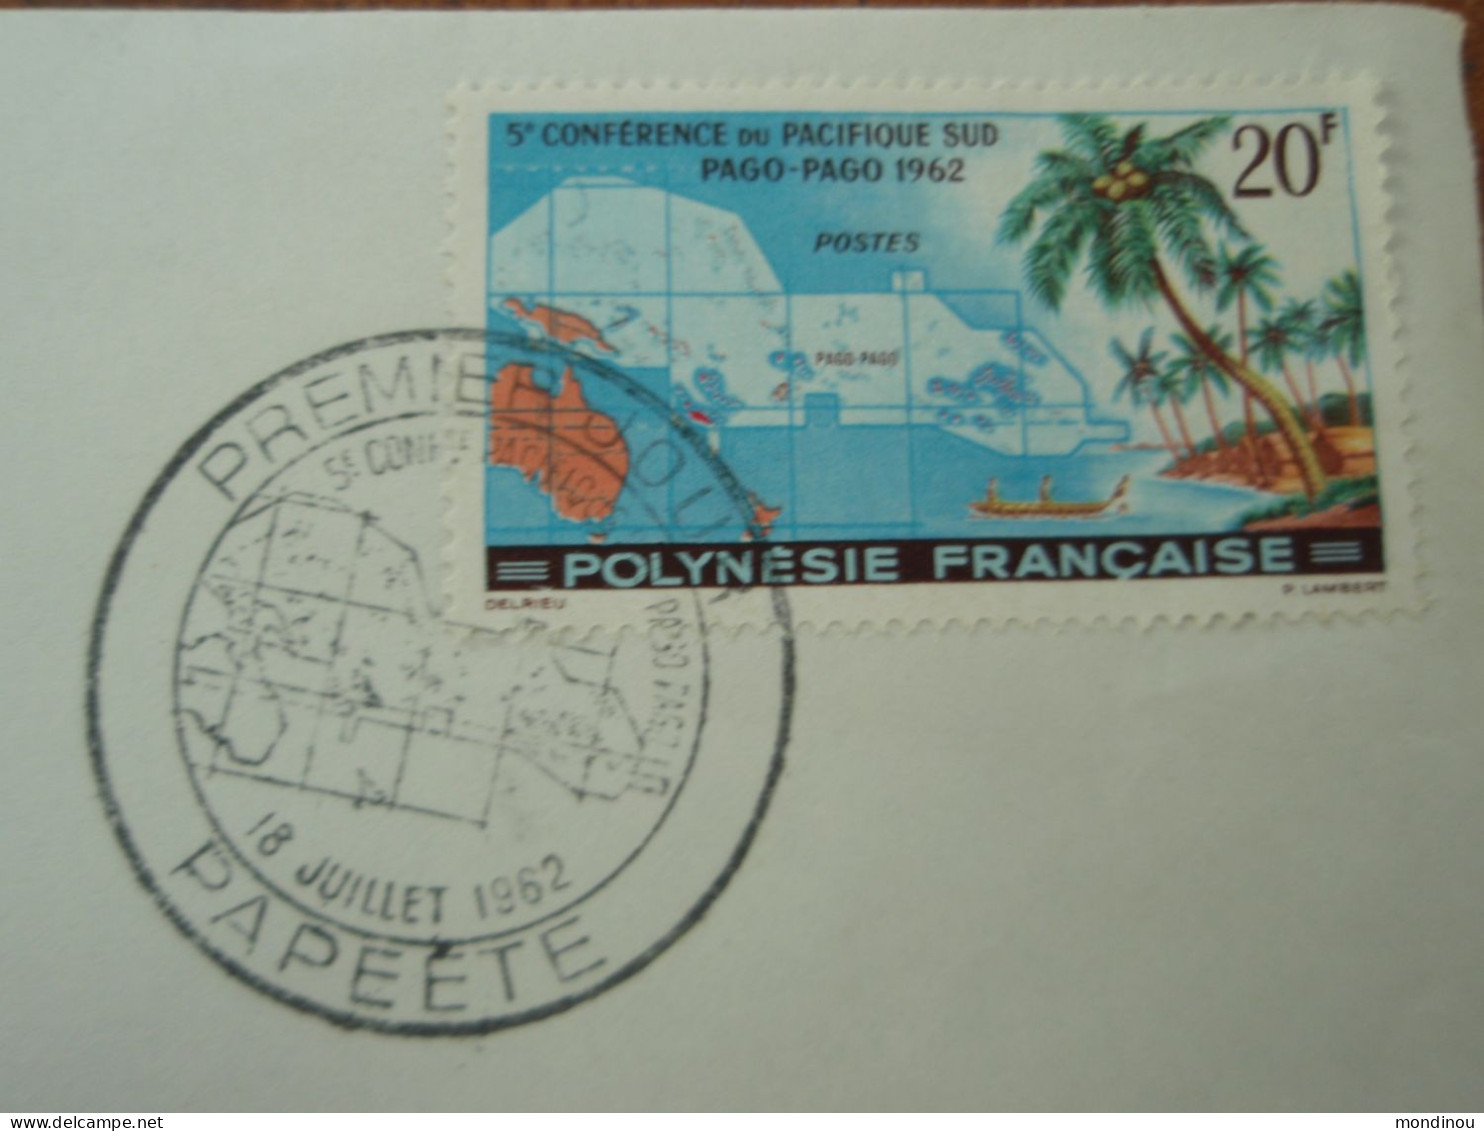 Timbre Polynésie Française - 5° Conférence Du Pacifique Sud PAGO-PAGO 1962 - Premier Jour PAPEETE - Gebraucht